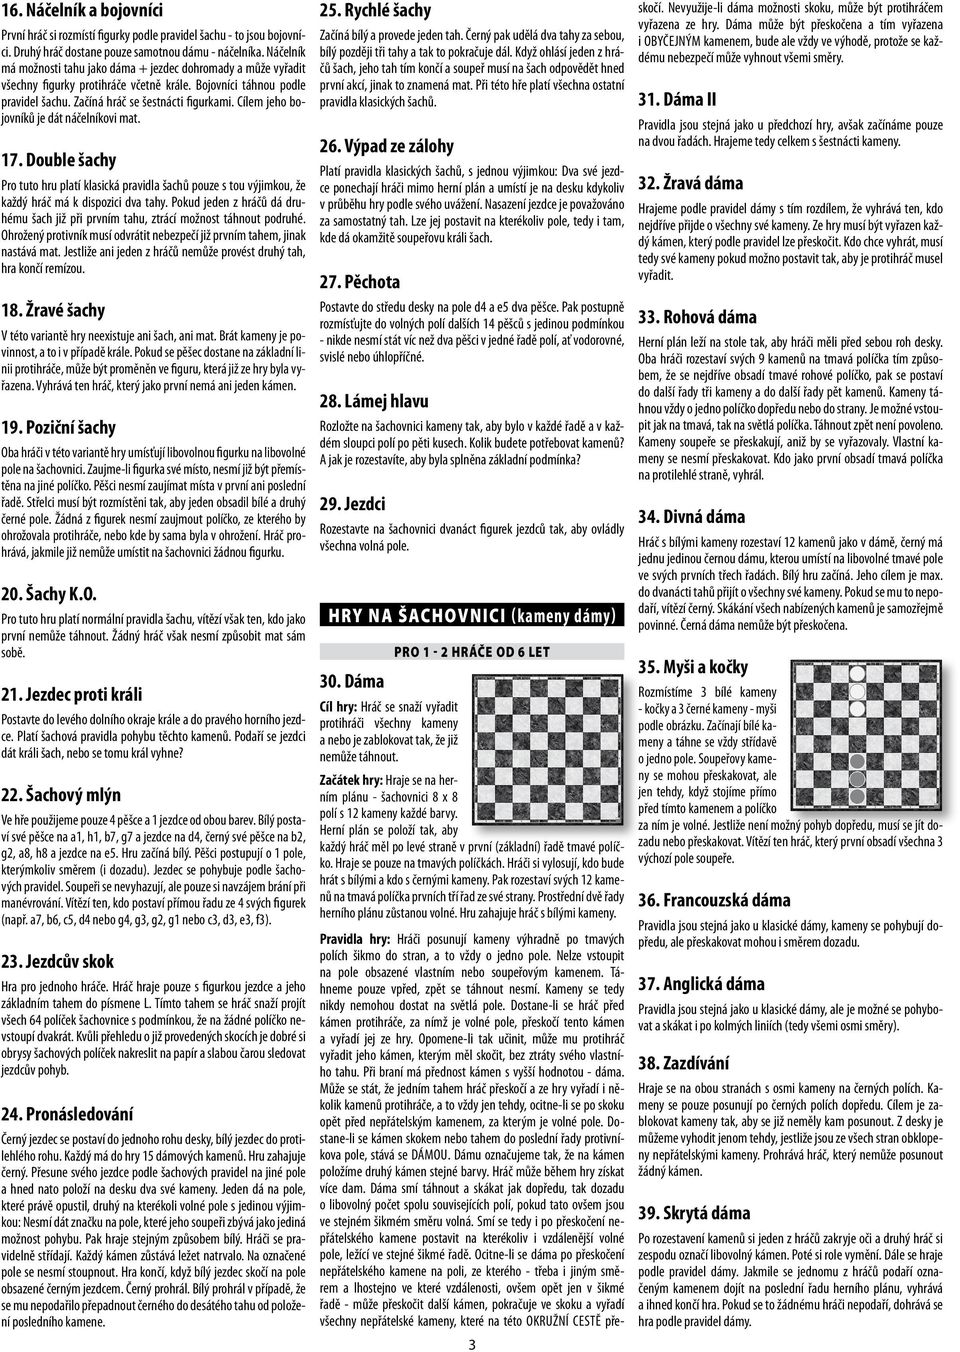 Cílem jeho bojovníků je dát náčelníkovi mat. 17. Double šachy Pro tuto hru platí klasická pravidla šachů pouze s tou výjimkou, že každý hráč má k dispozici dva tahy.